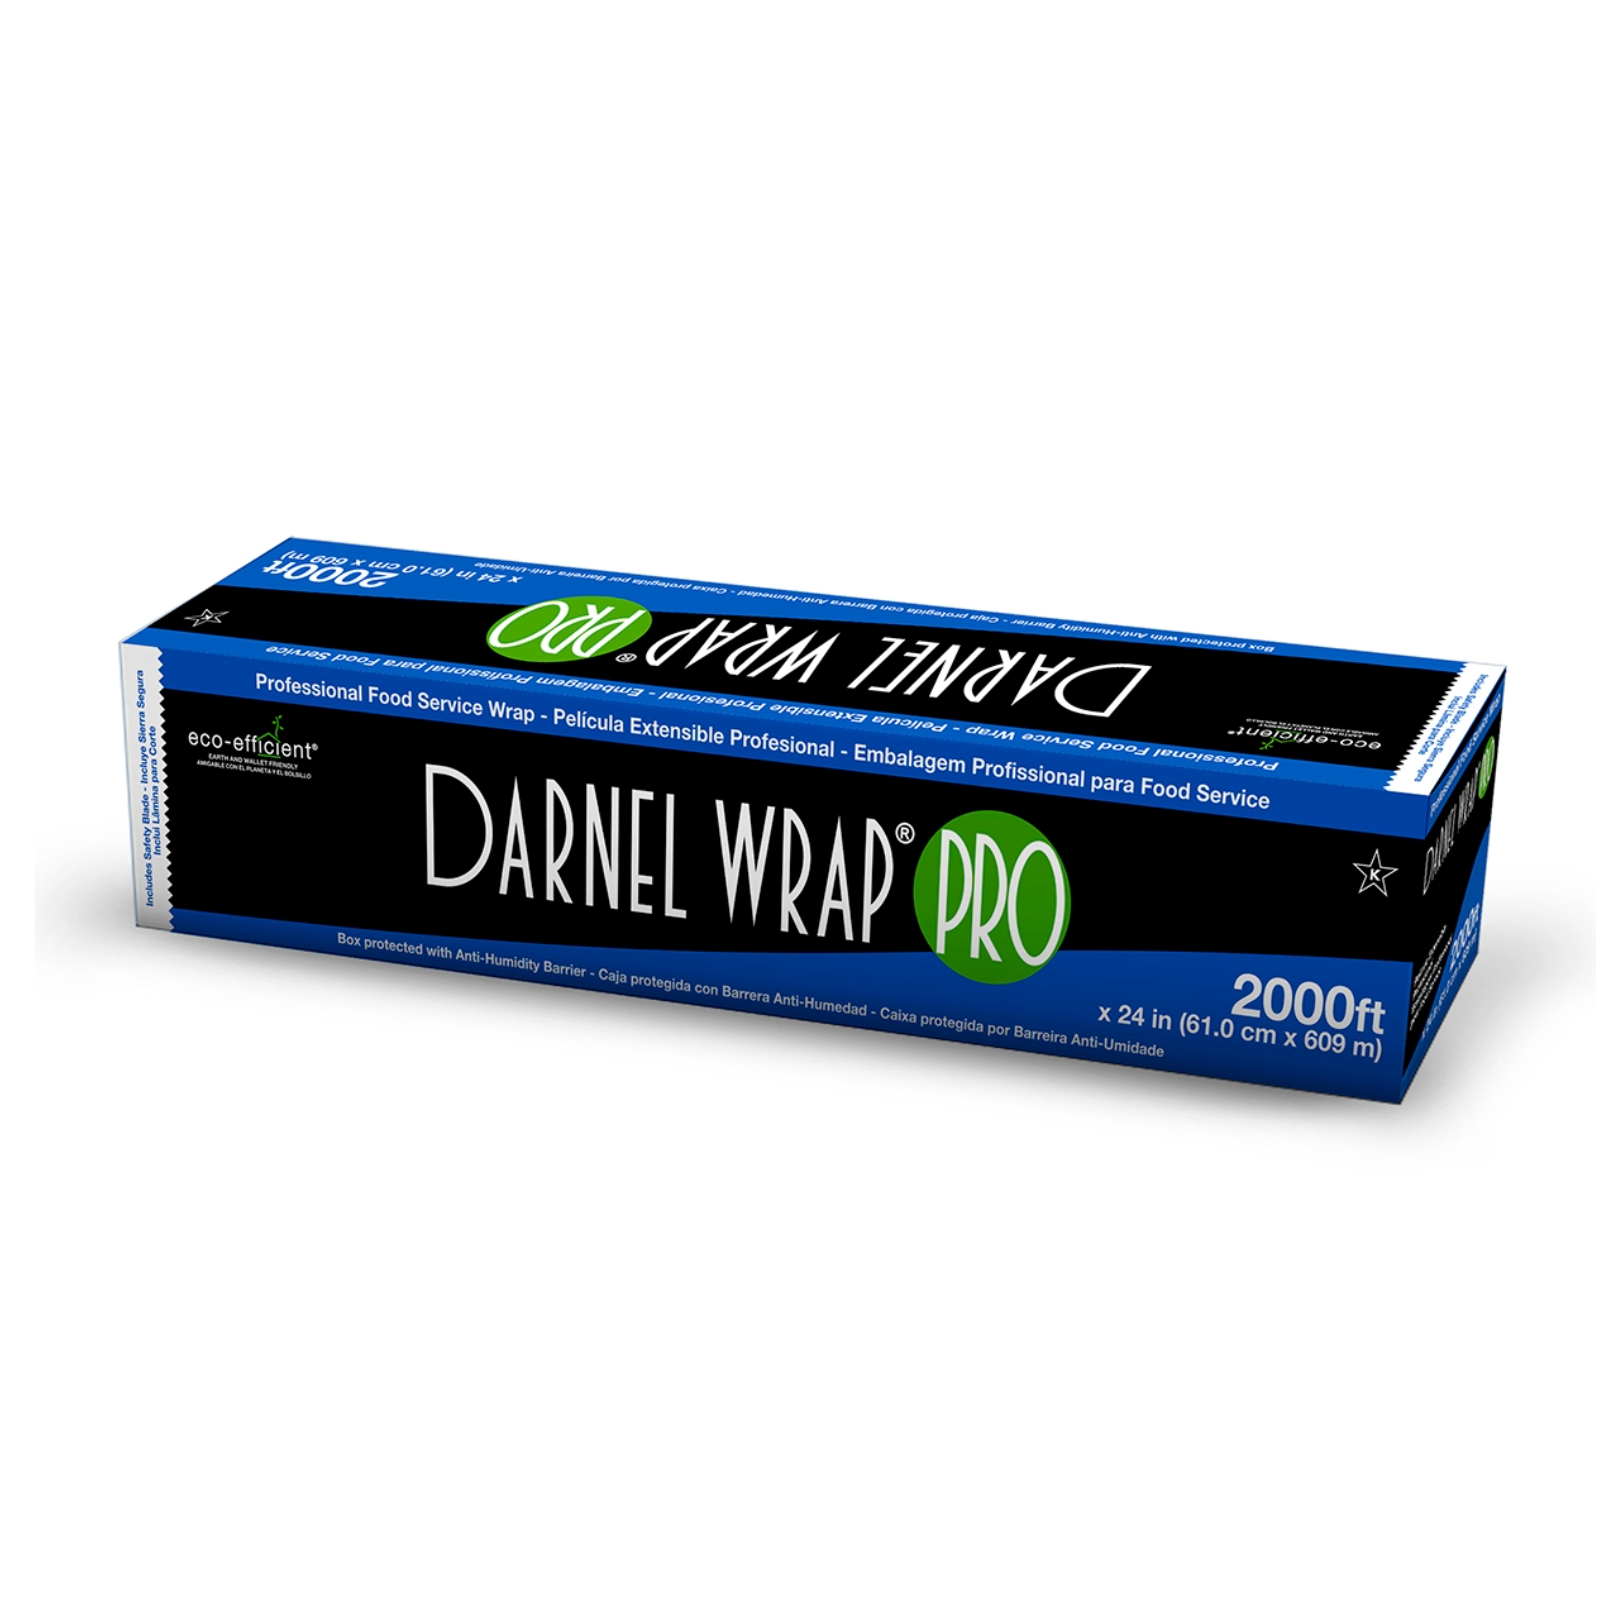 Darnel - DarnelWrap PRO Food Service Wrap, 24" x 2000', Metal Cutter